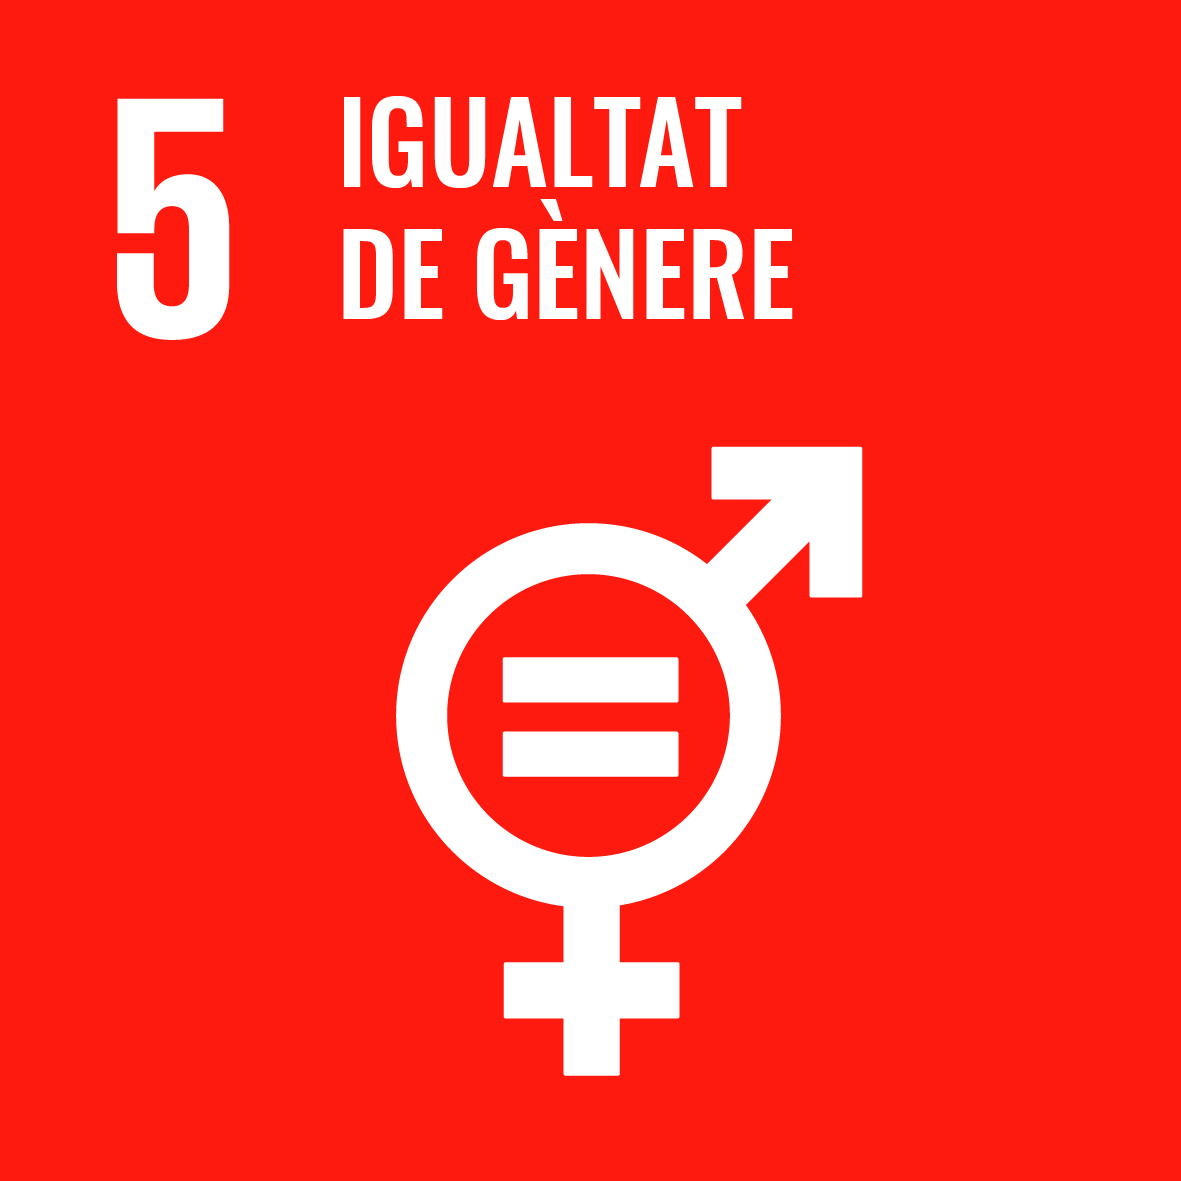 Objectiu 5: Aconseguir la igualtat entre els gèneres i apoderar totes les dones i les nenes